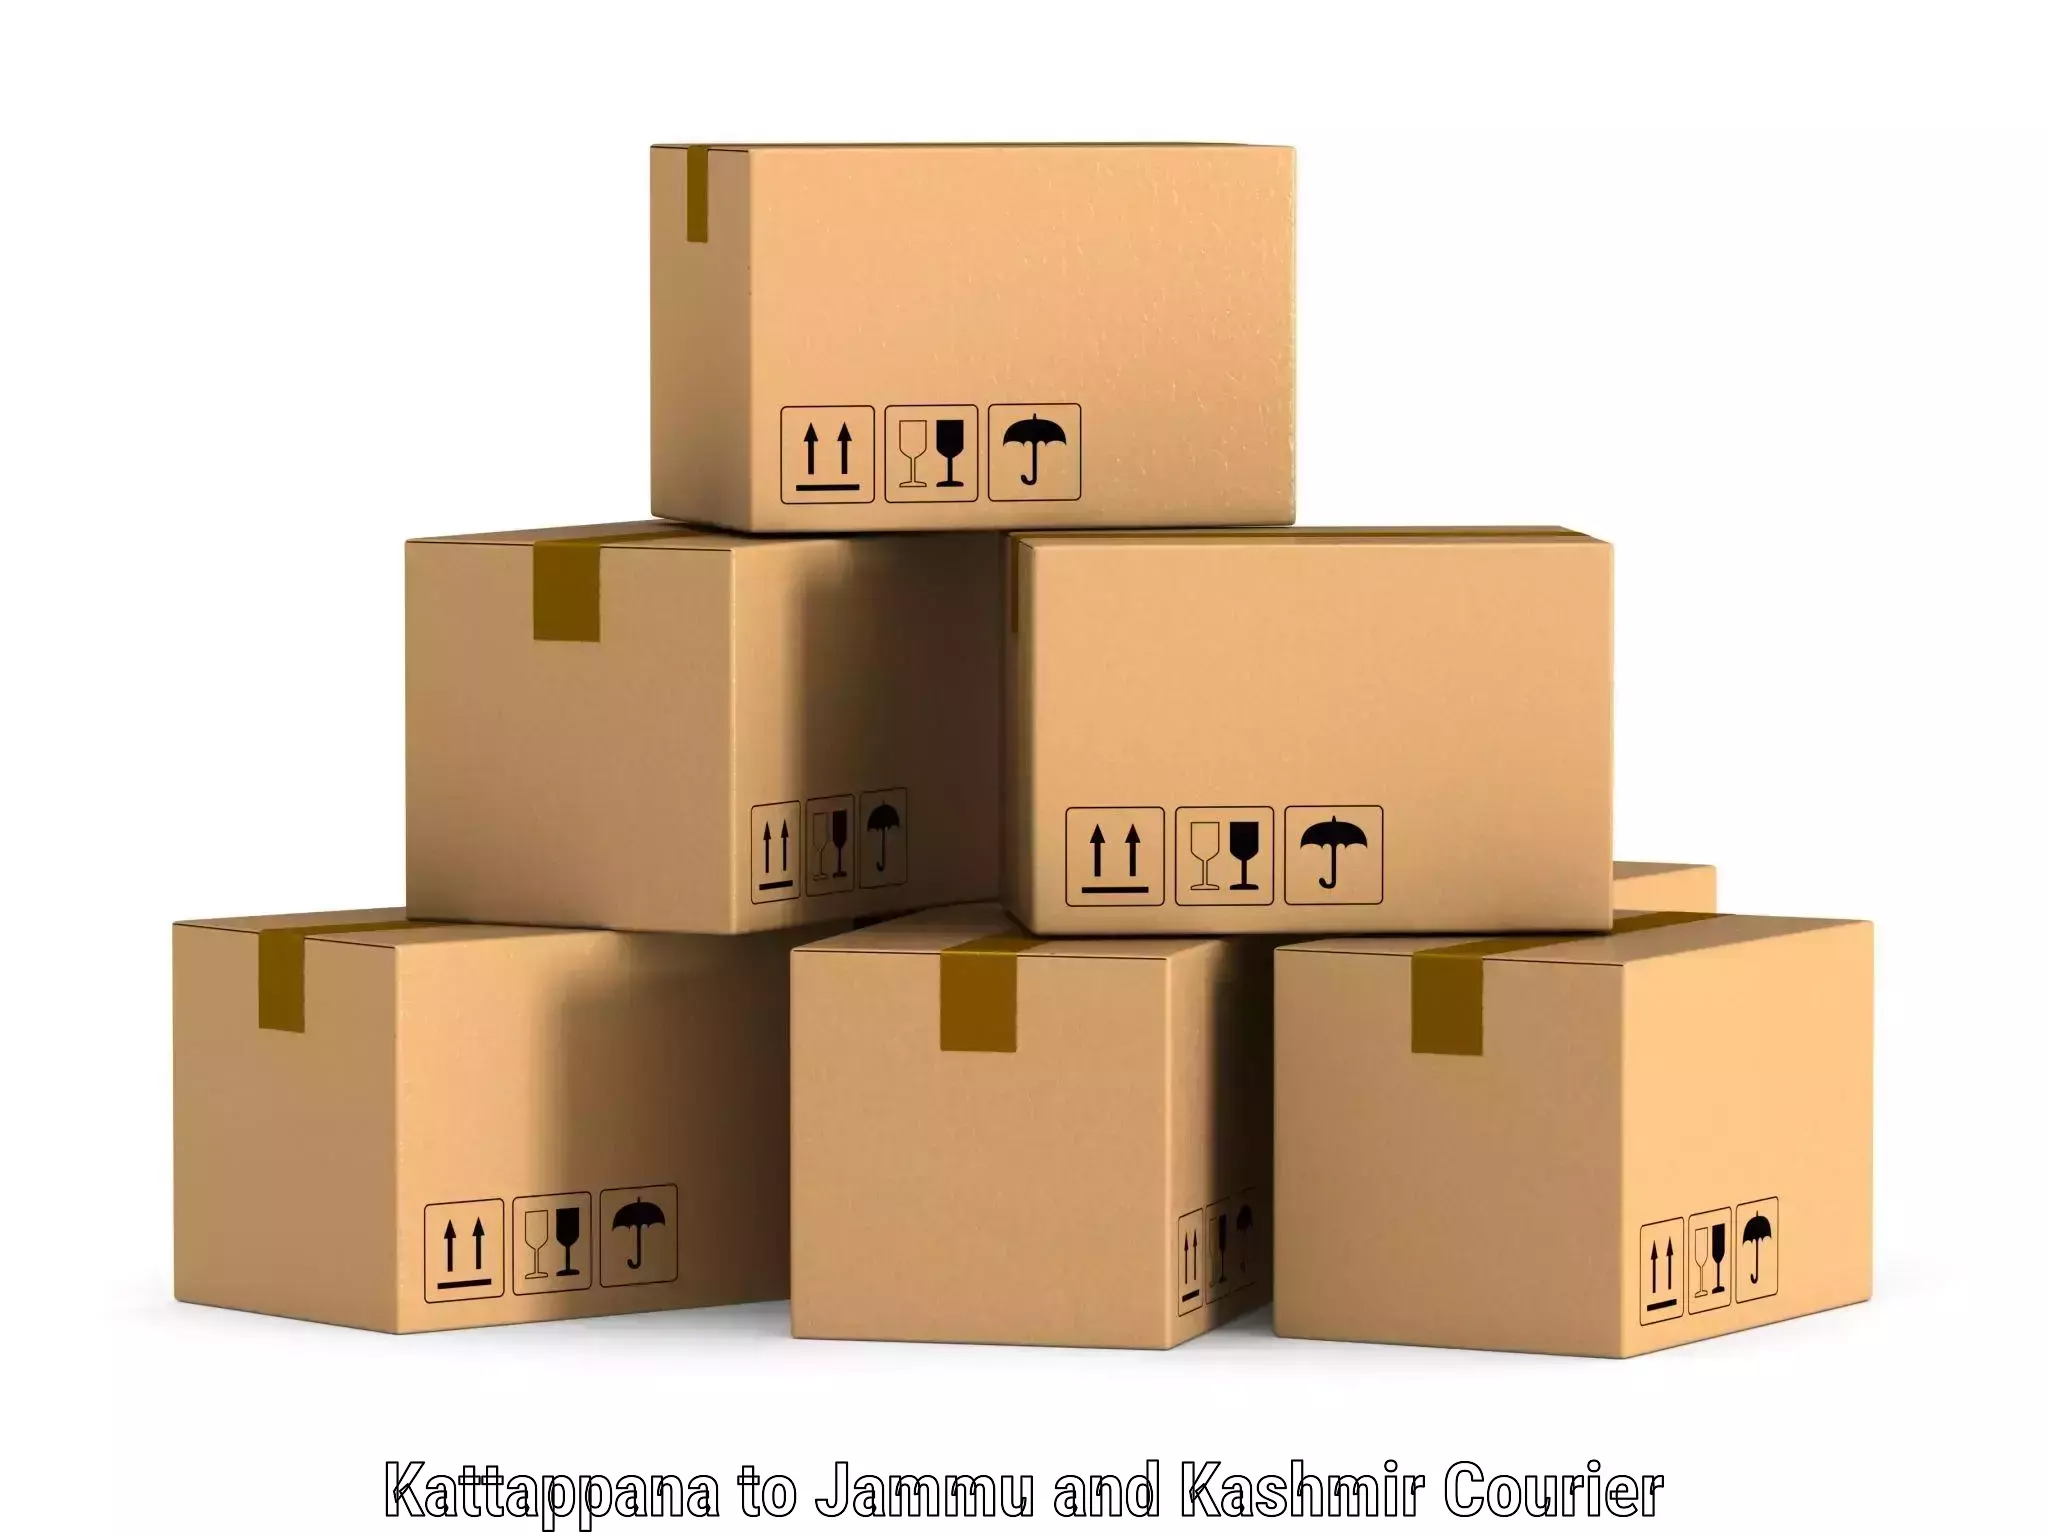 Express delivery capabilities Kattappana to Shopian